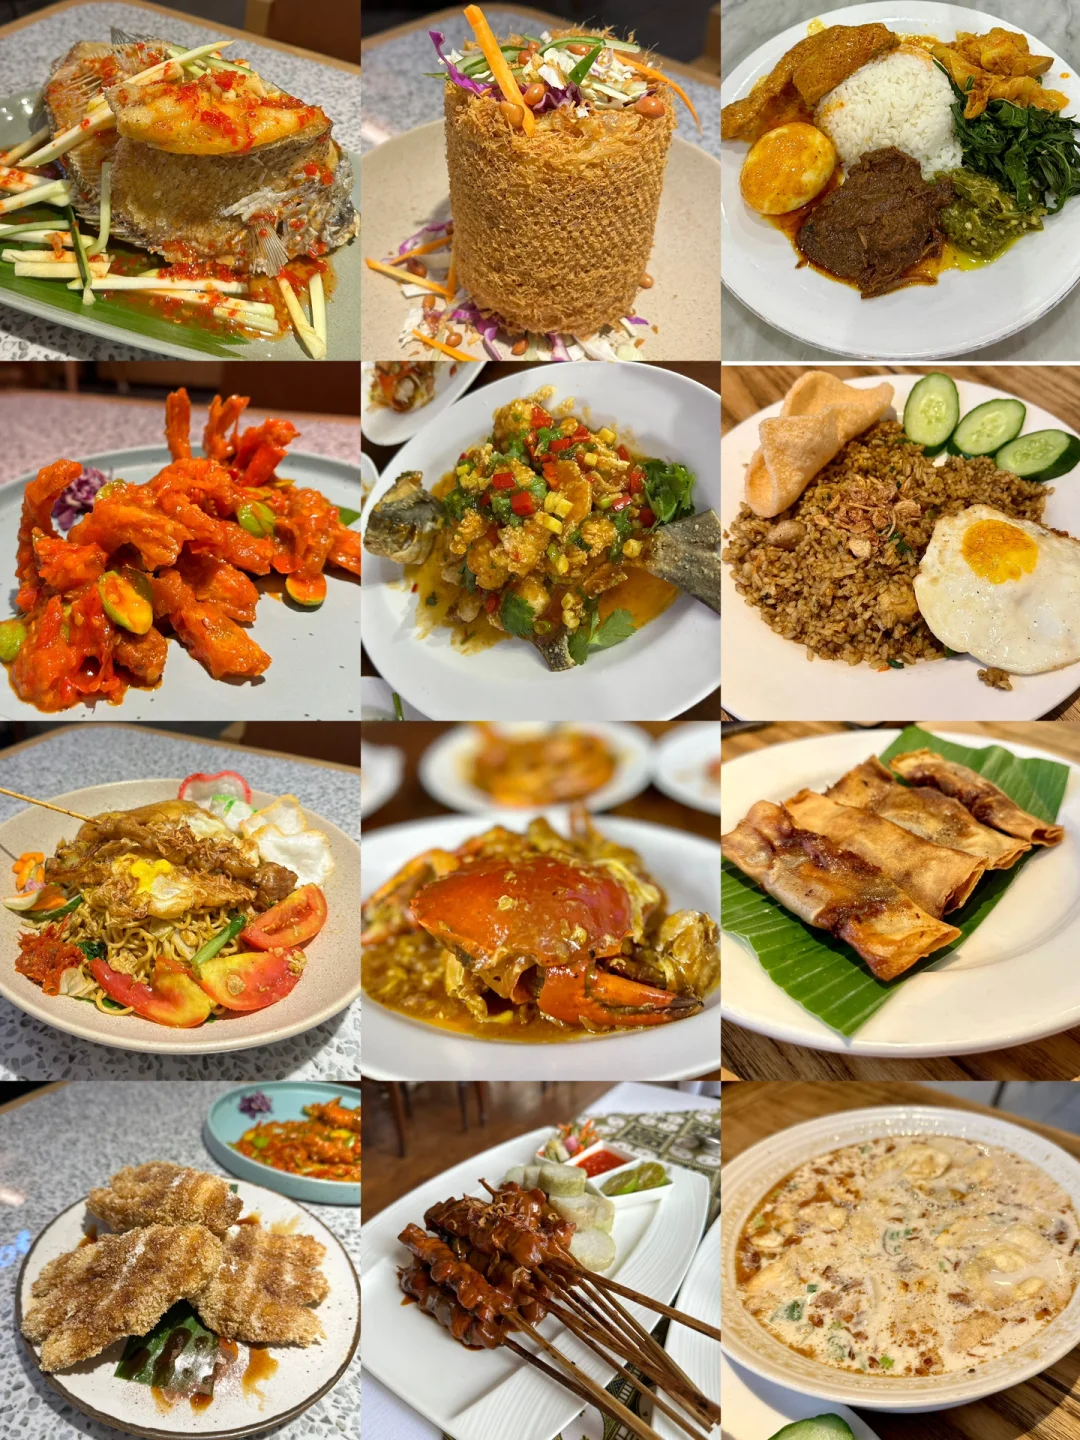 Jakarta-Jakarta is not a food desert? Kafe Betawi OR Cafe Batavia OR Bandar Djakarta OR Remph Bistro